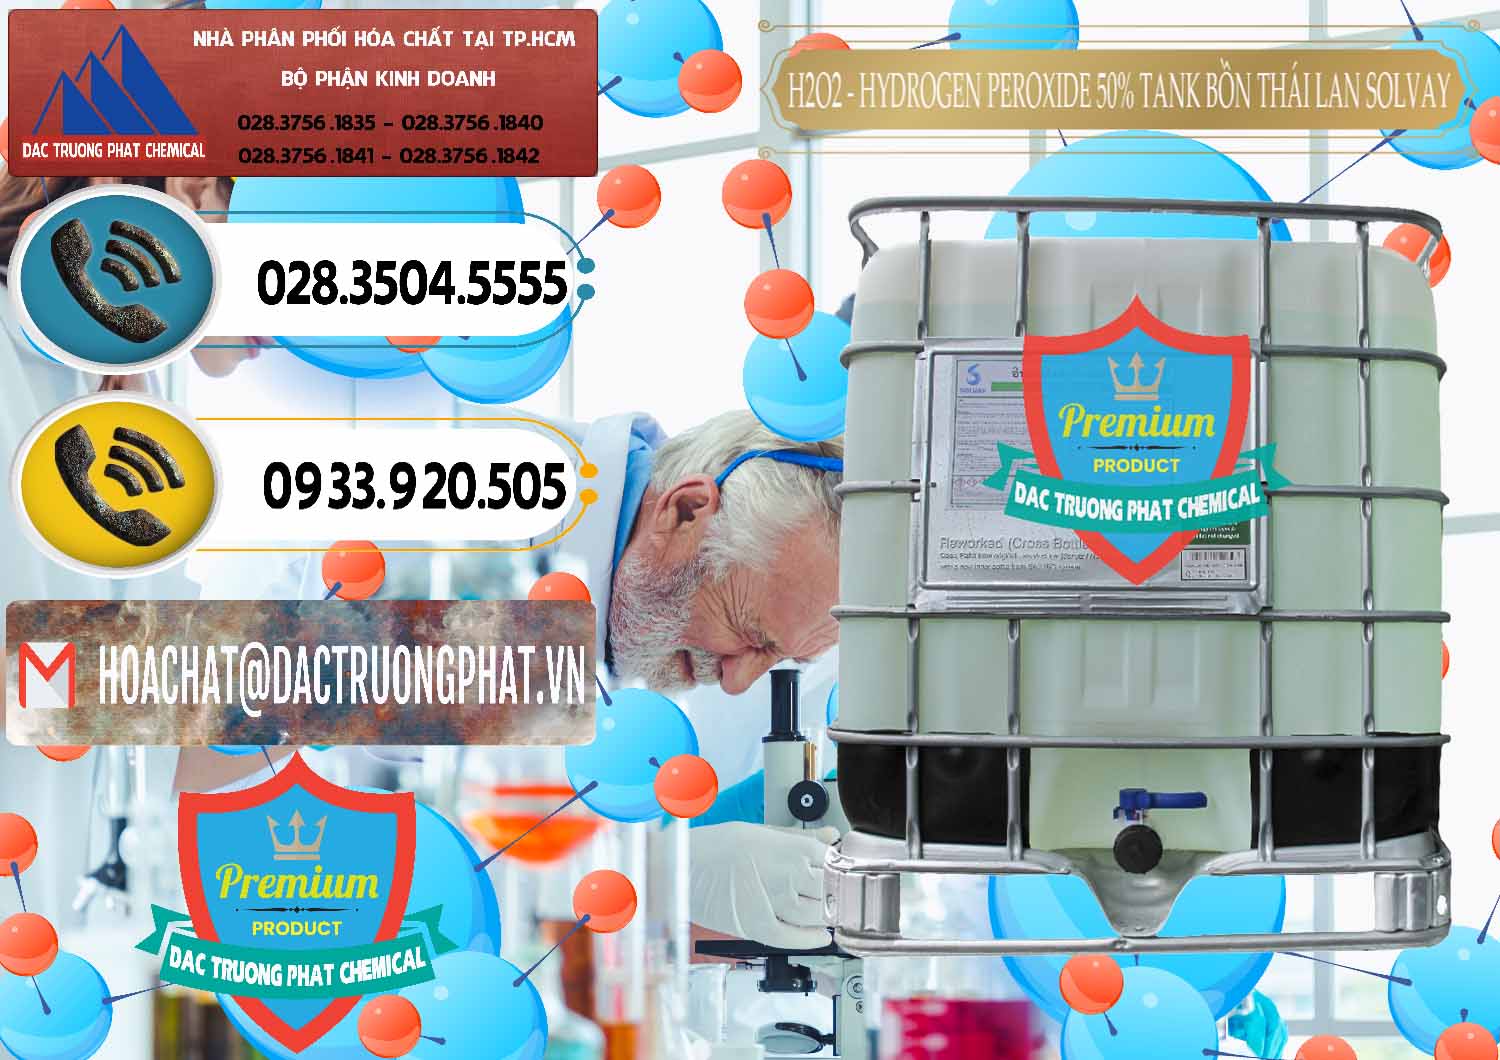 Cty cung cấp và bán H2O2 - Hydrogen Peroxide 50% Tank IBC Bồn Thái Lan Solvay - 0072 - Nhập khẩu _ phân phối hóa chất tại TP.HCM - hoachatdetnhuom.vn